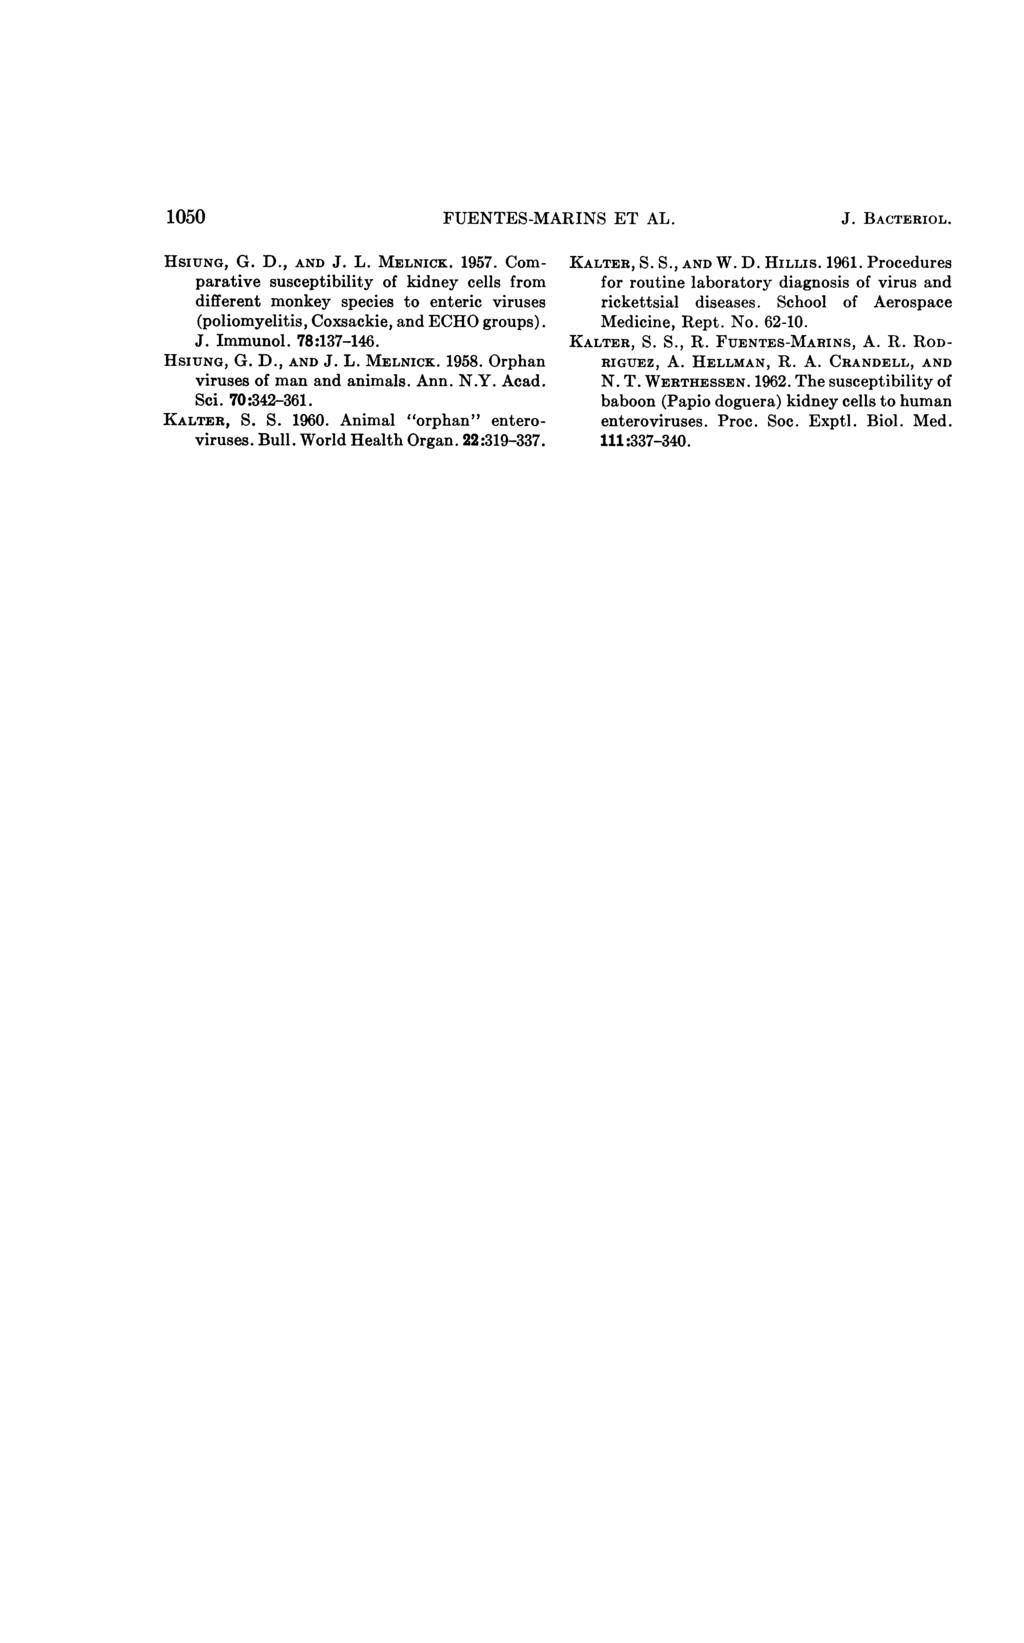 1050 FUENTES-MARINS ET AL. J. BACTERIOL. HSIUNG, G. D., AND J. L. MELNICK. 1957.